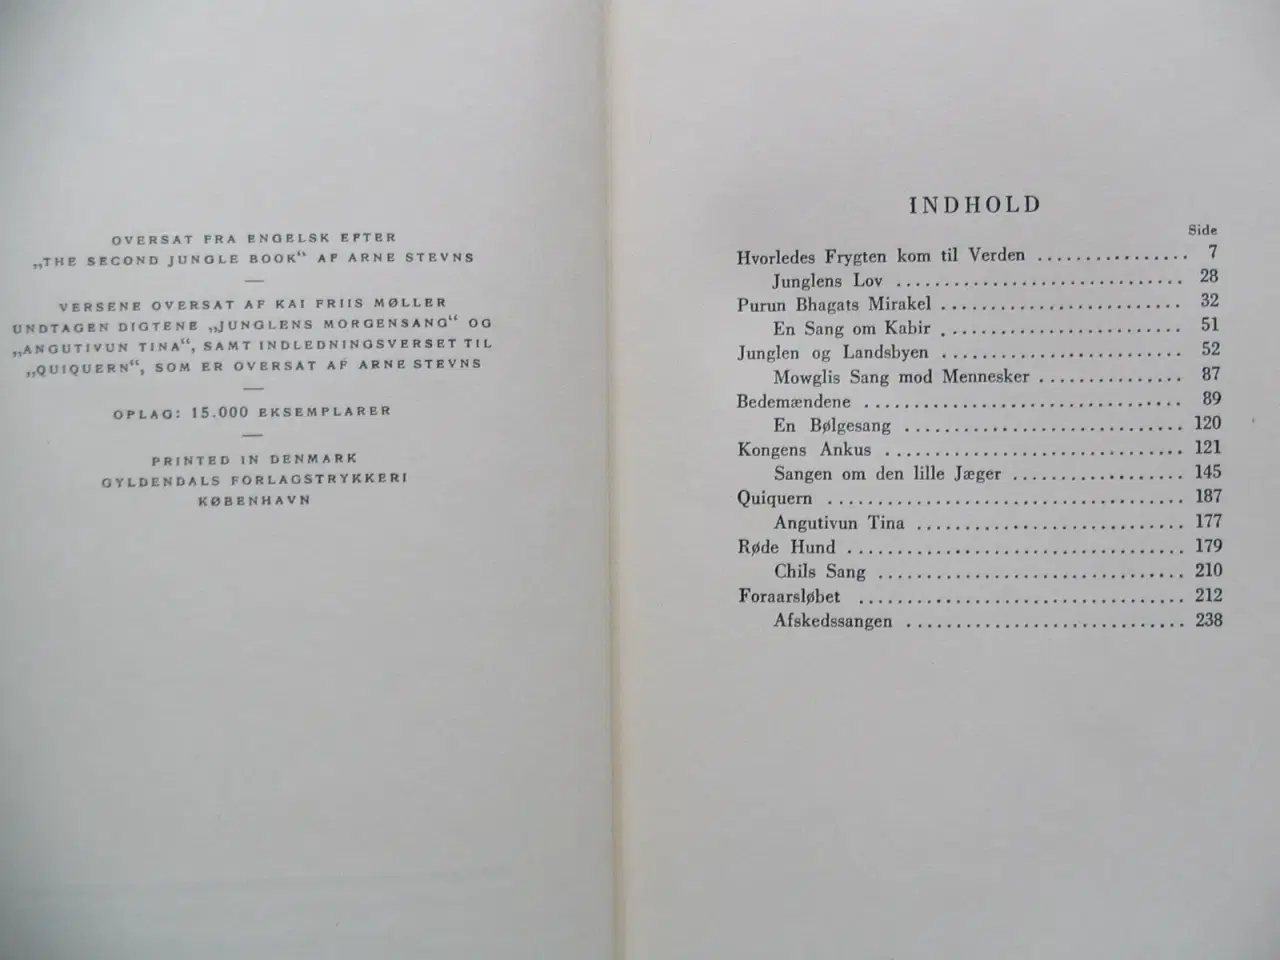 Billede 2 - Kipling (1865-1936). Værker i udvalg i 12 bind